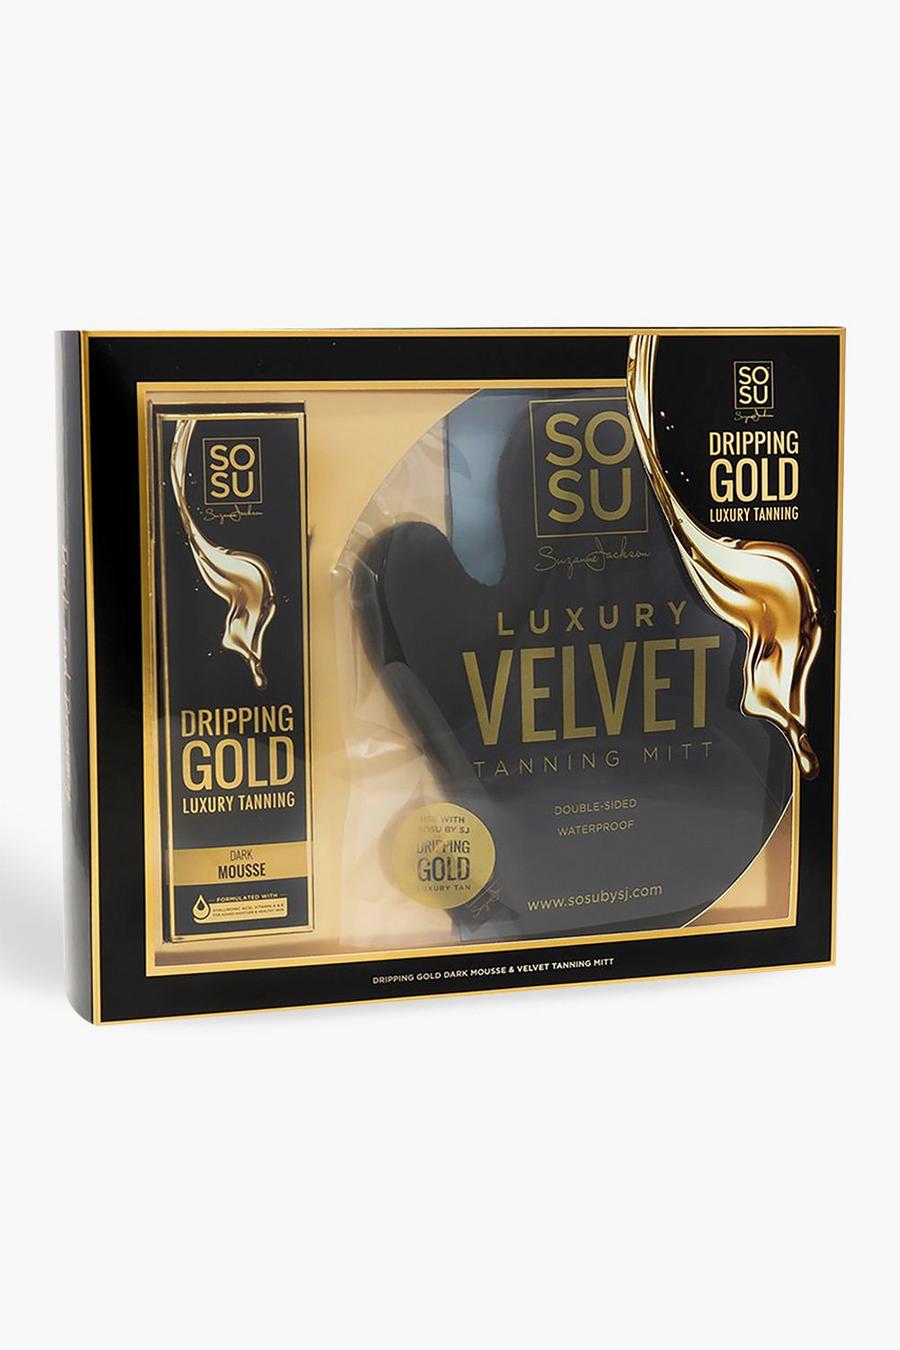 Gold metallic Sosu Dark Mousse And Tanning Mitt Gift Set